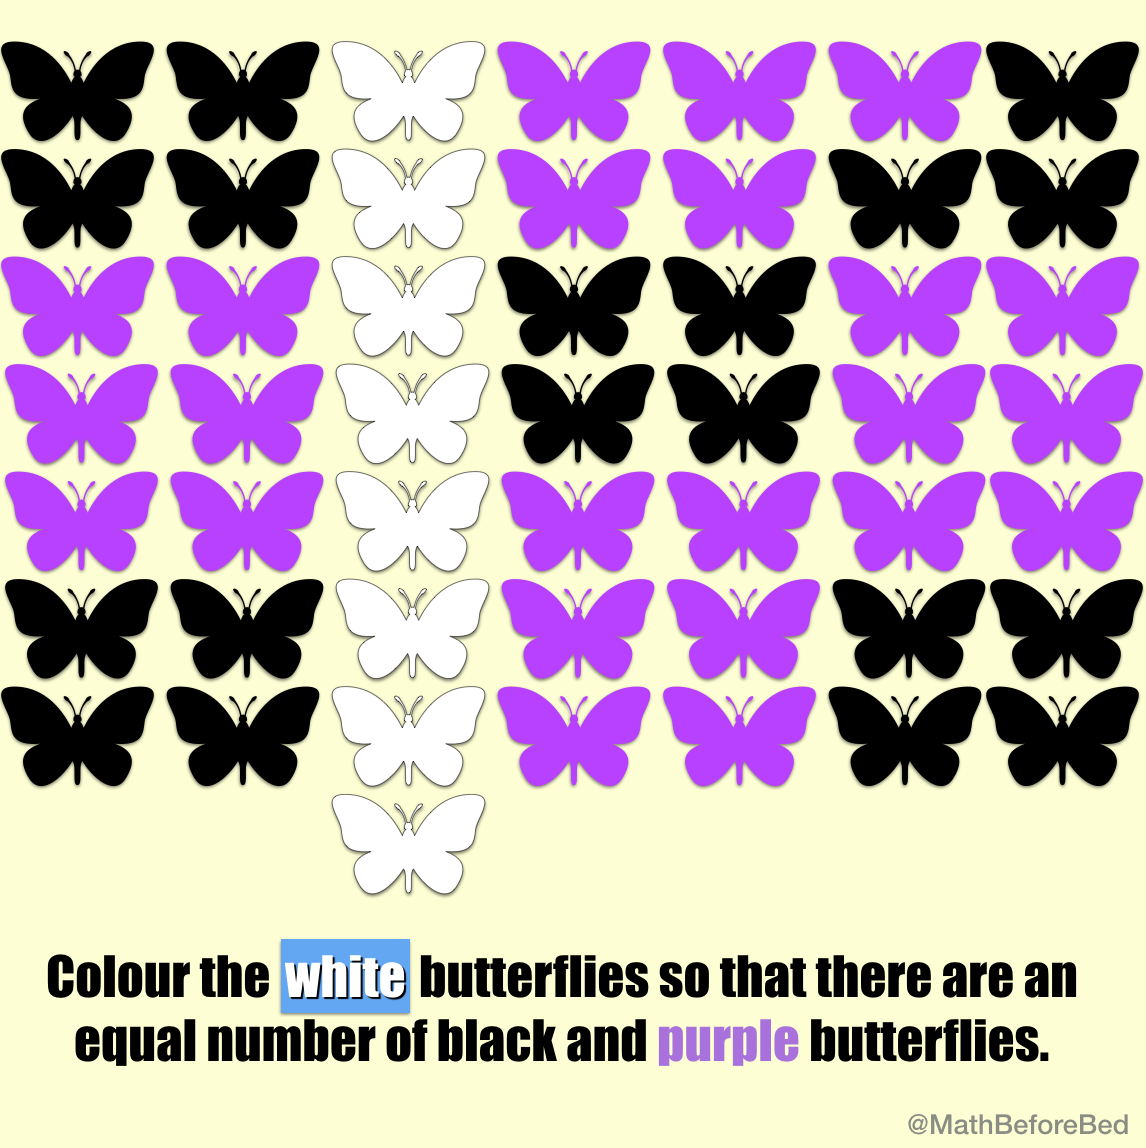 A Kaleidoscope of Butterflies